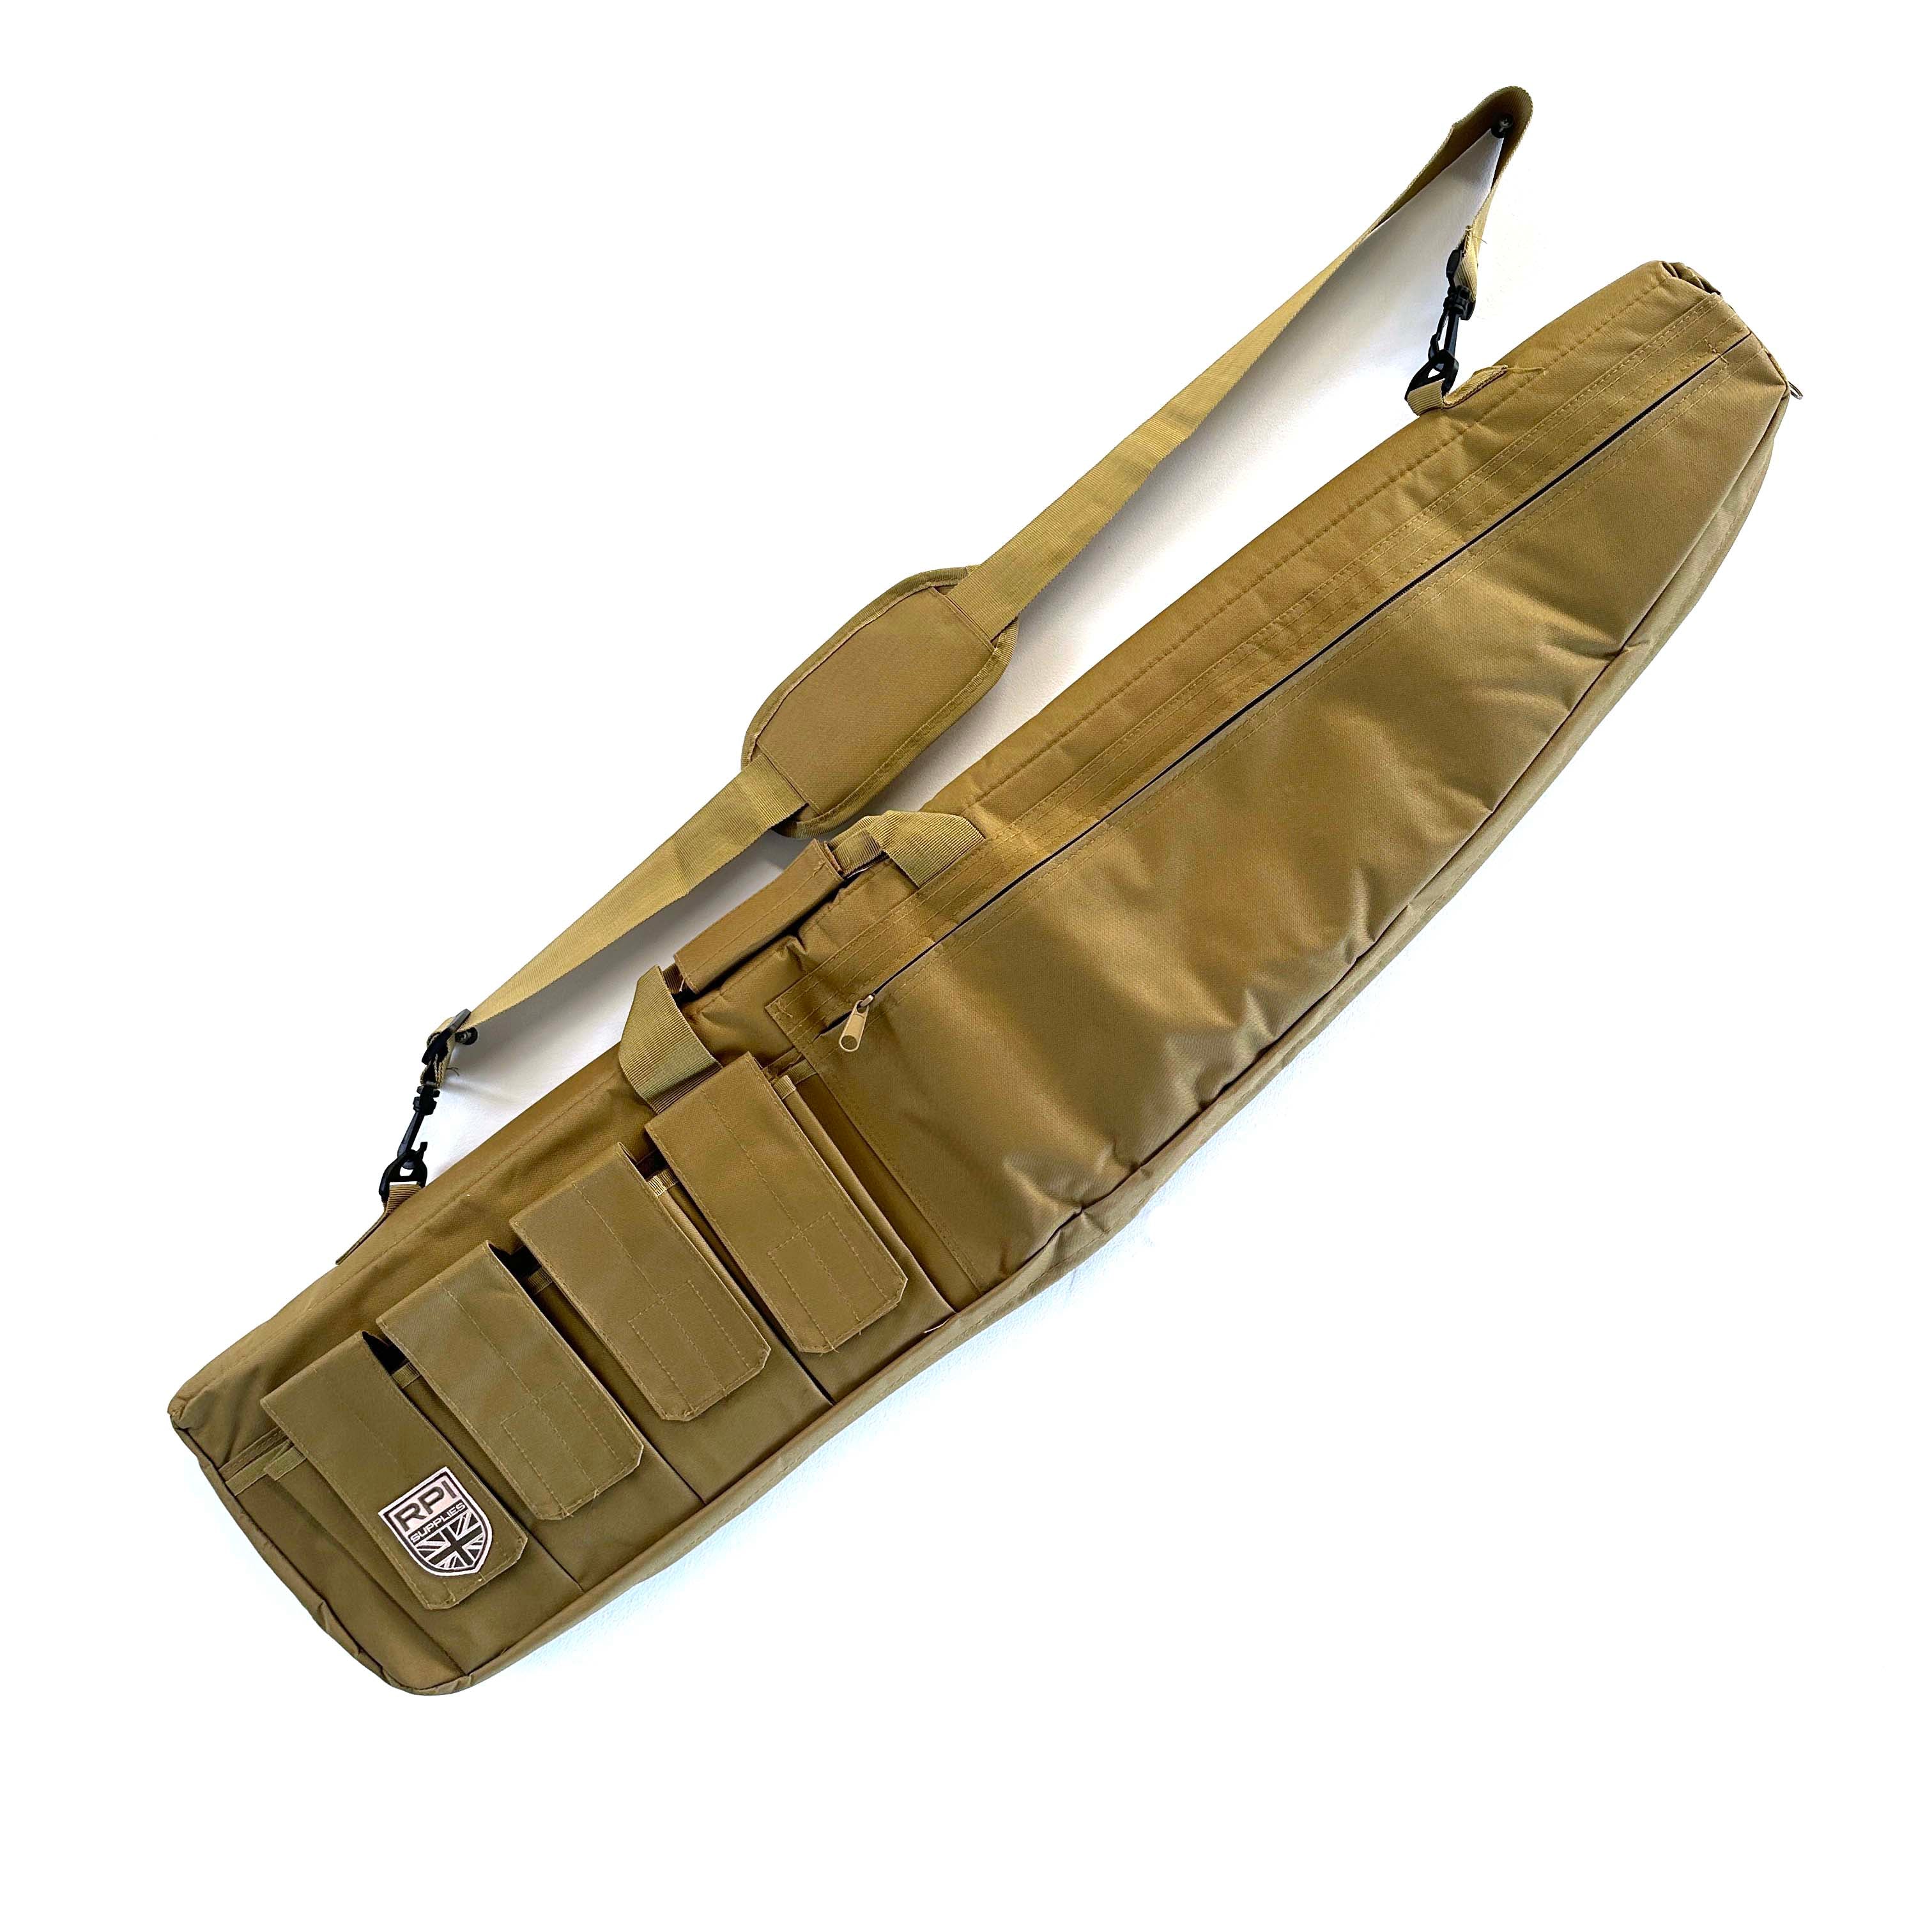 1.2 Meter Gun Bag - Tan - Brand New - RPI Supplies